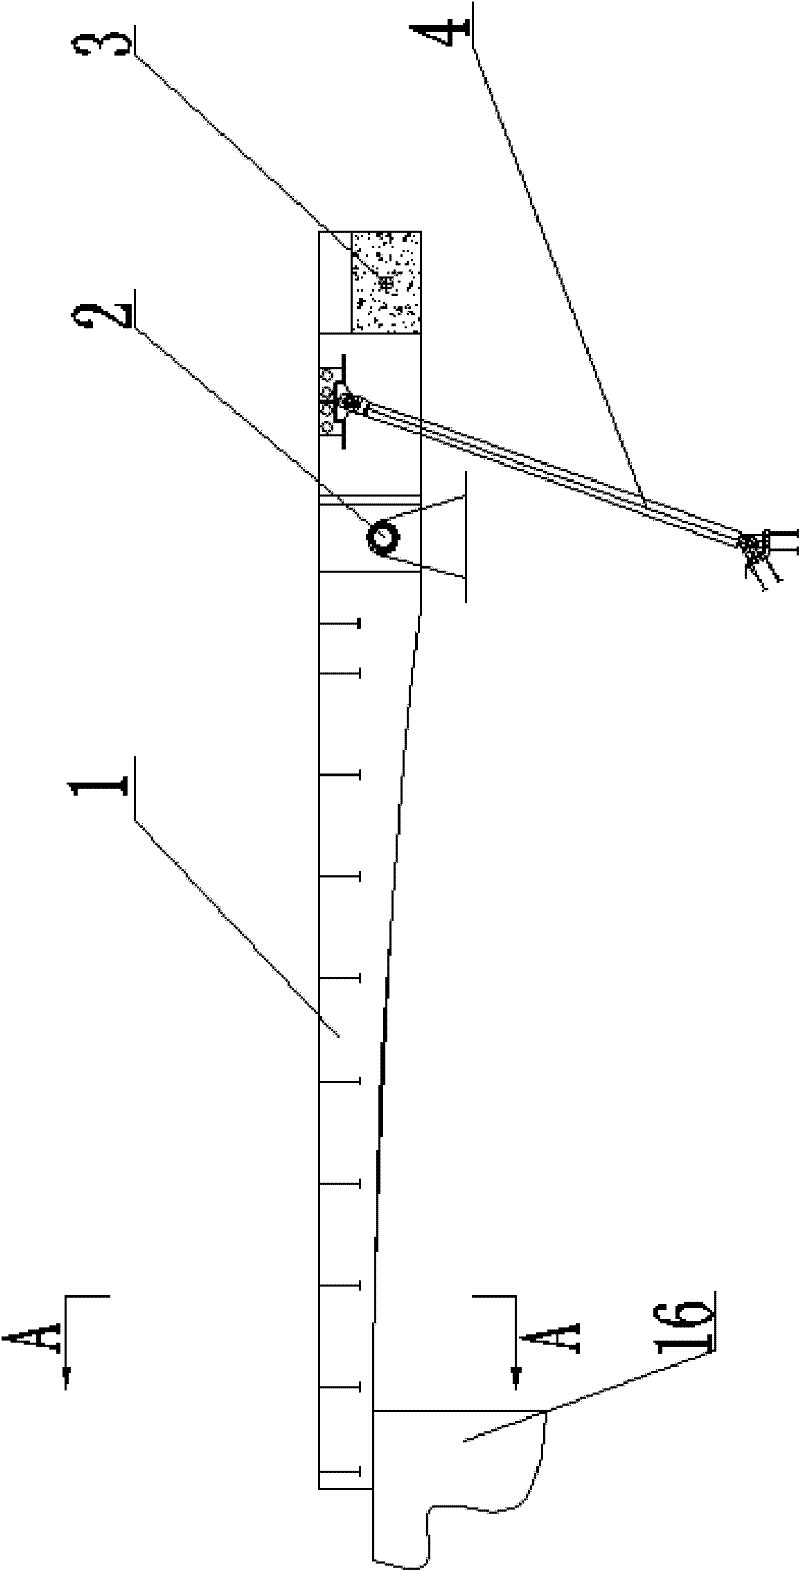 Fixed rotating shaft type hydraulic opening bridge